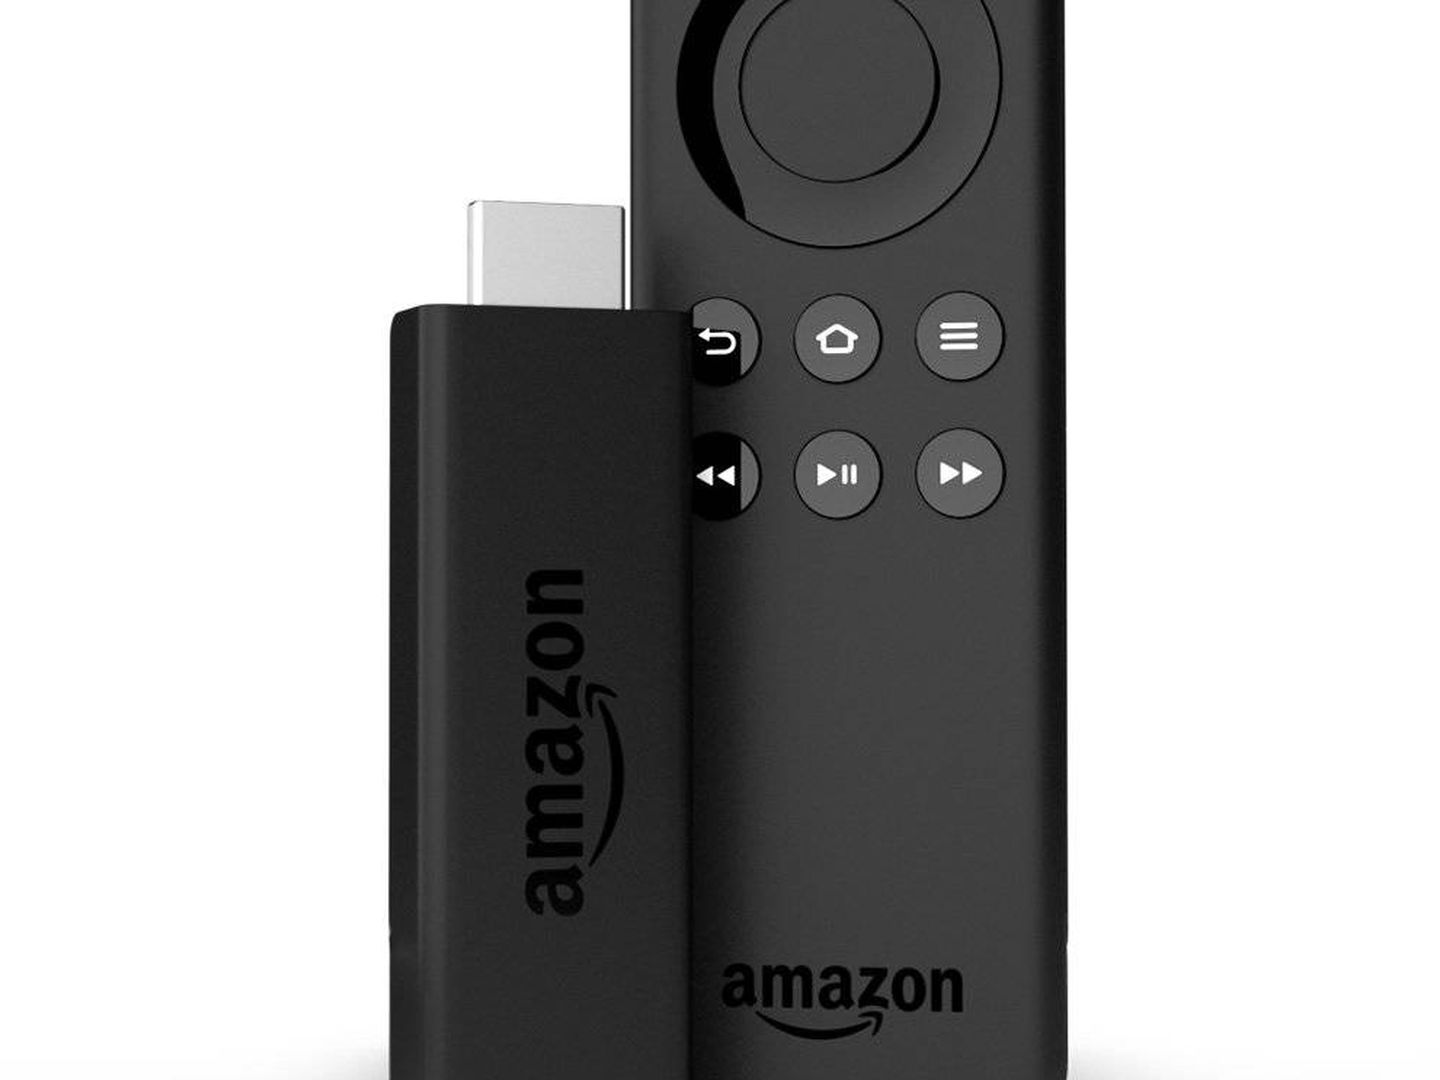 Así es el Amazon Fire TV Stick.